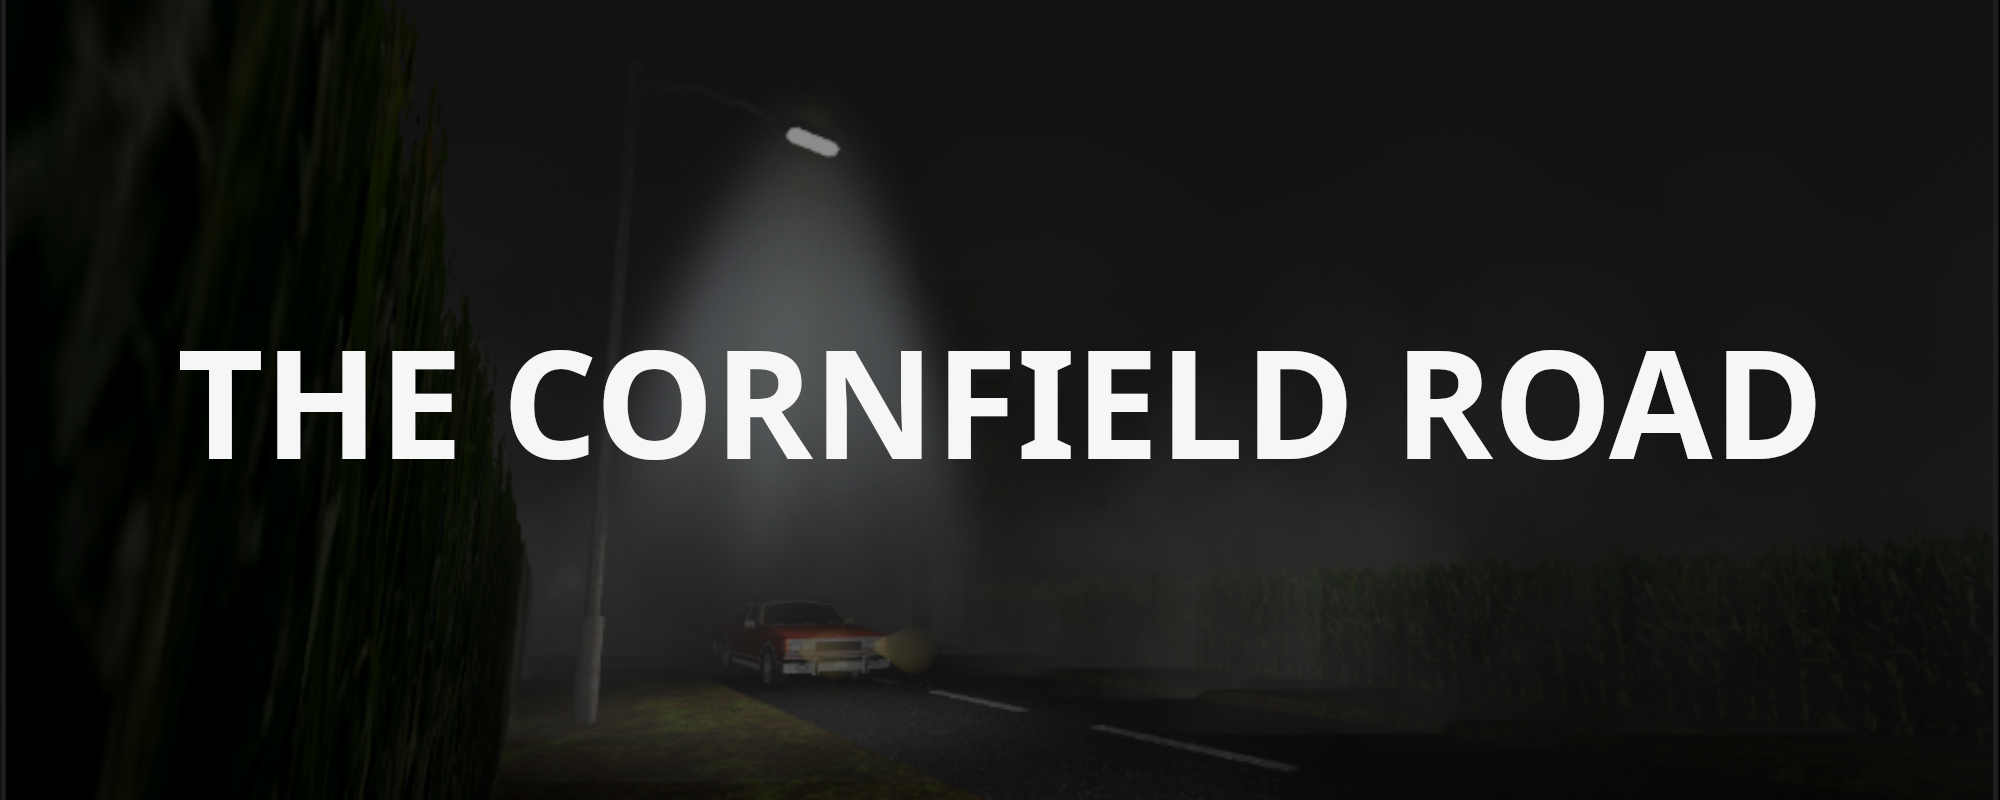 The Cornfield Road